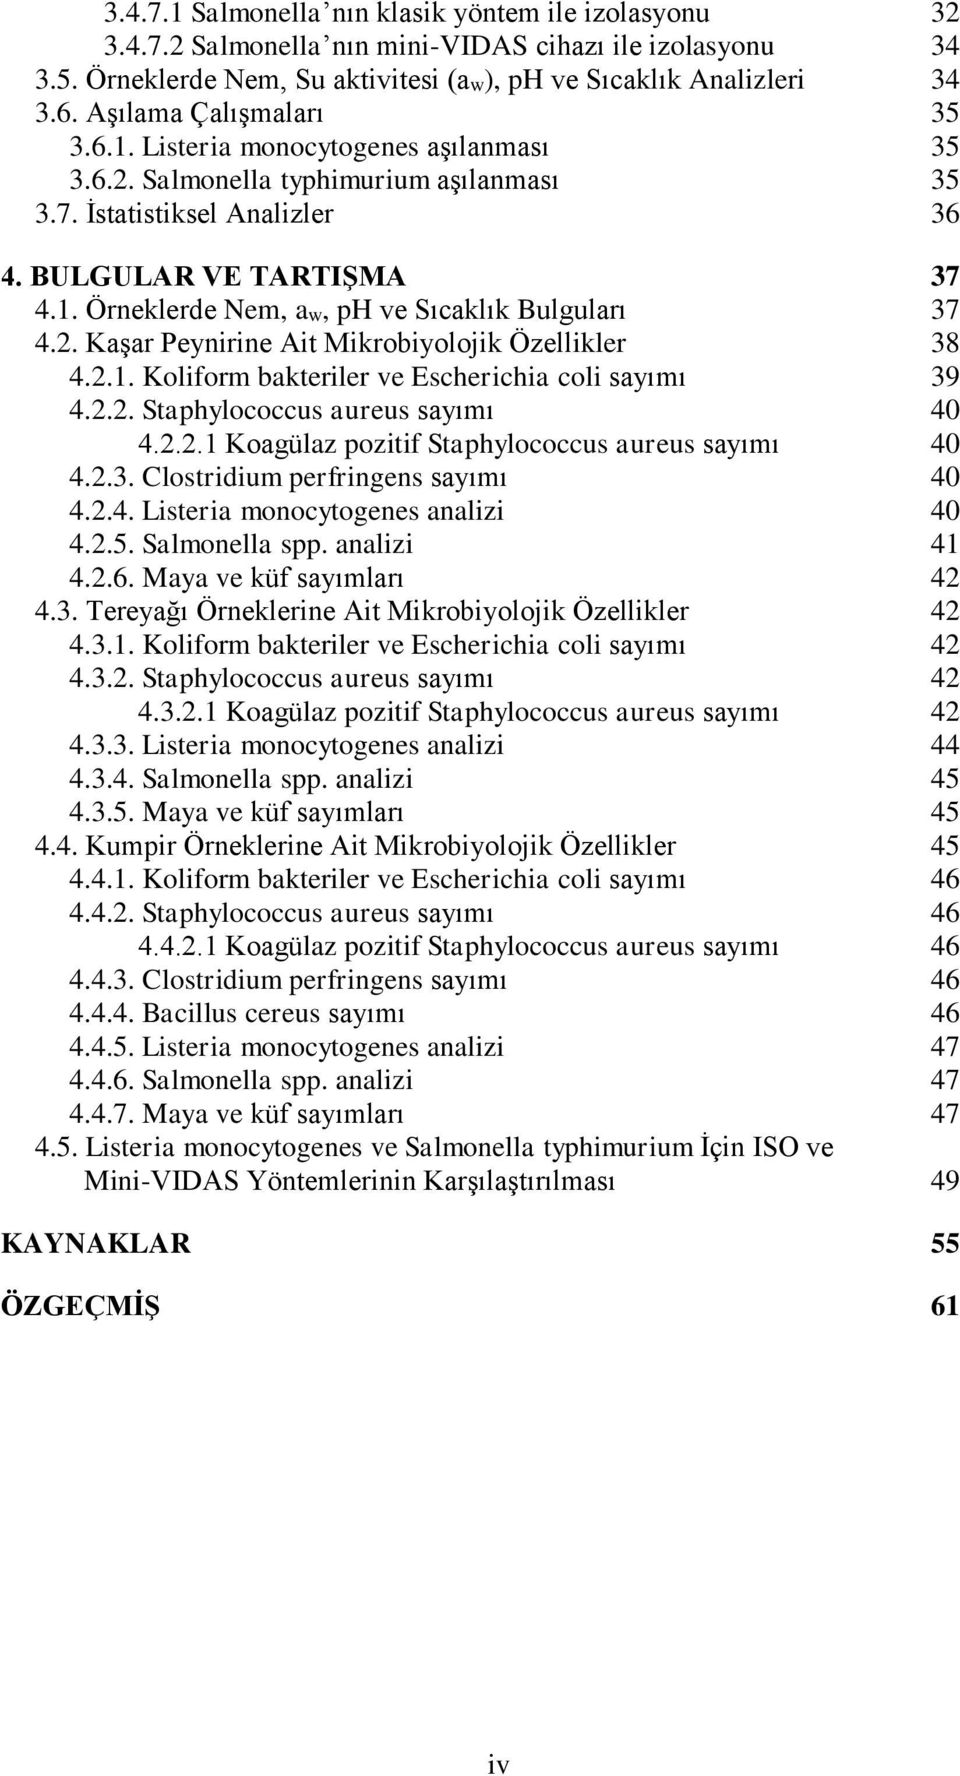 2. Kaşar Peynirine Ait Mikrobiyolojik Özellikler 8 4.2.1. Koliform bakteriler ve Escherichia coli sayımı 9 4.2.2. Staphylococcus aureus sayımı 40 4.2.2.1 Koagülaz pozitif Staphylococcus aureus sayımı 40 4.